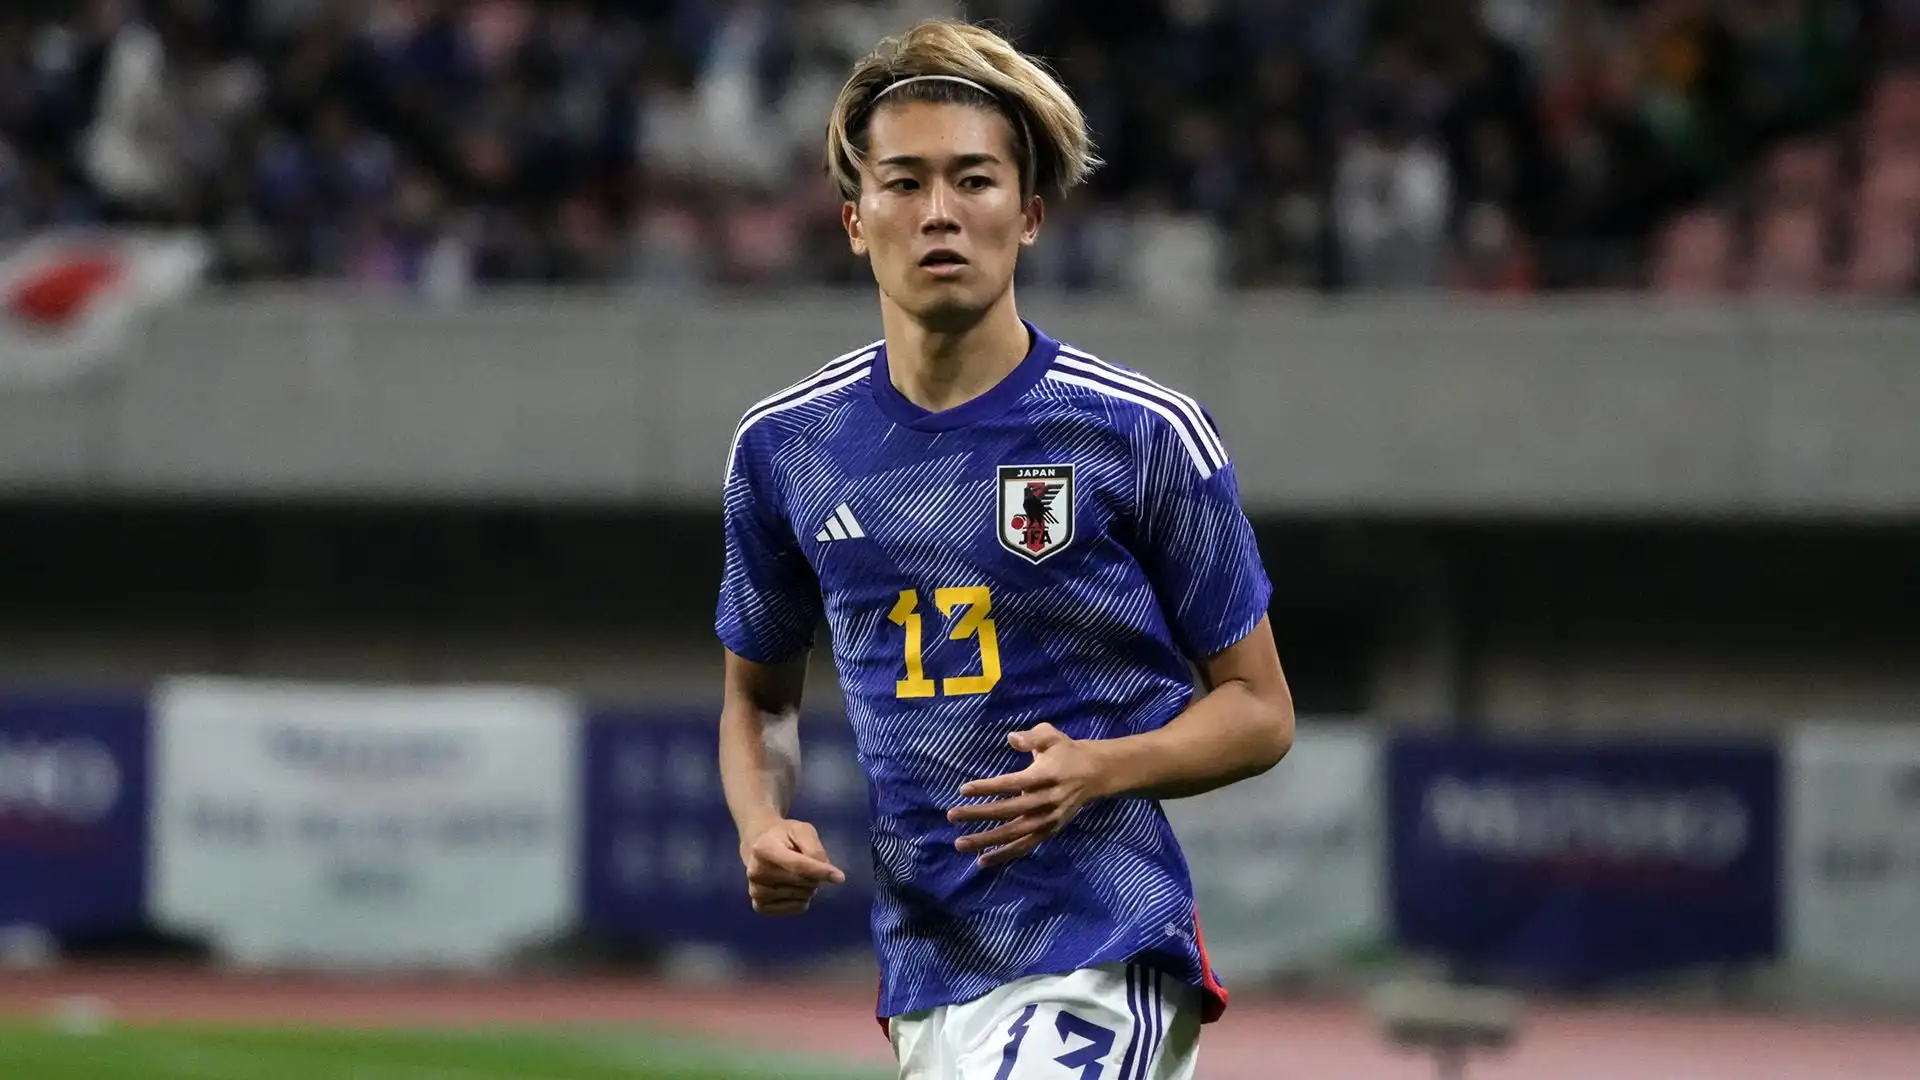 L'attaccante Keito Nakamura potrebbe diventare una risorsa importante per la nazionale giapponese